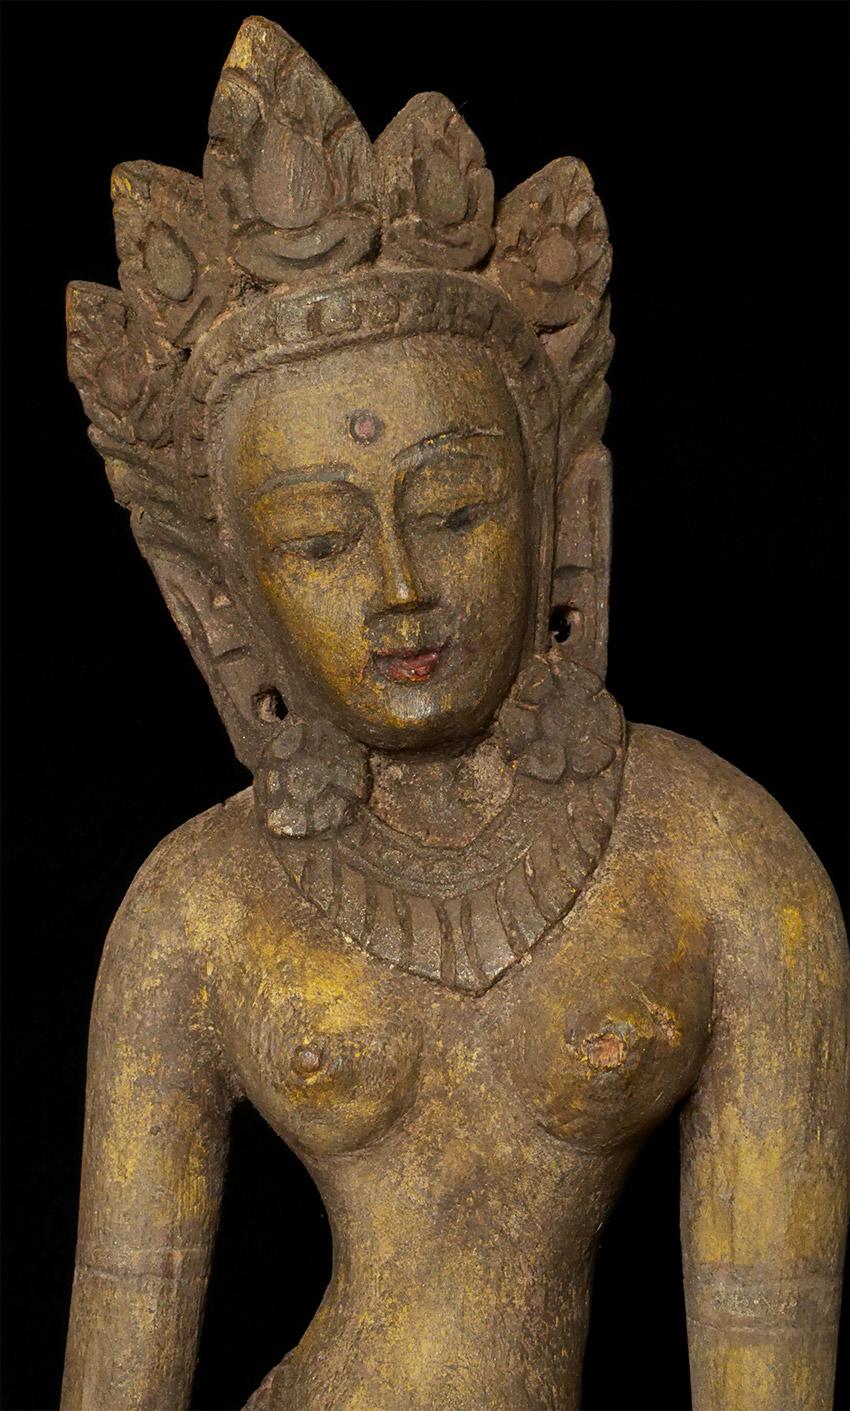 Große antike nepalesische Tara oder andere weibliche Göttin. Wahrscheinlich 17/18. Jahrhundert oder früher. Schönes Gesicht, anmutige Haltung, fabelhafte Patina - alles in allem ein großartiges Beispiel für seinen Typ. Das einzige Problem war, dass